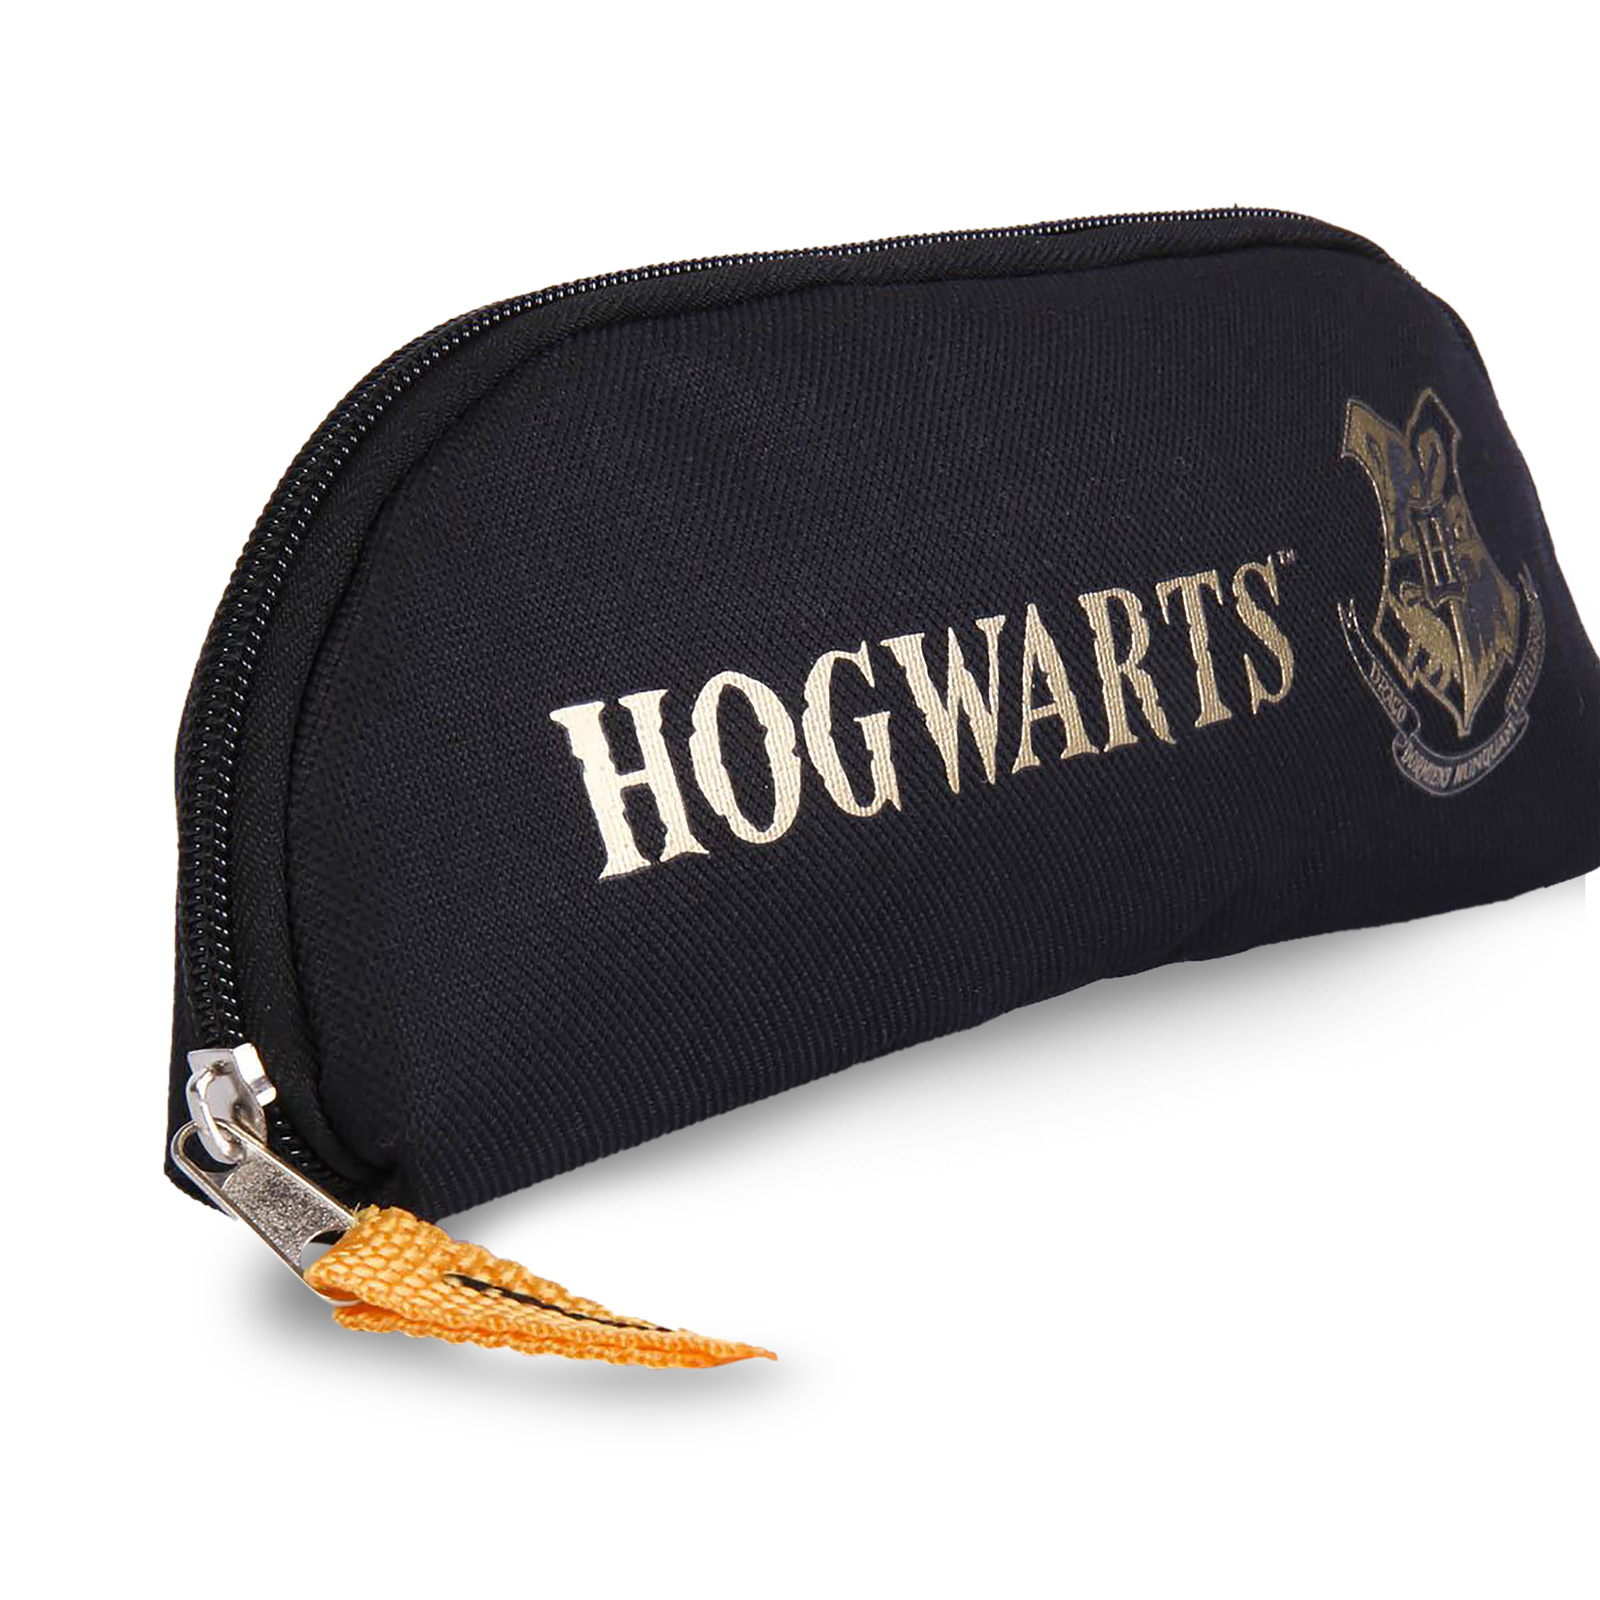 Harry Potter - Hogwarts Crest Pencil Case black